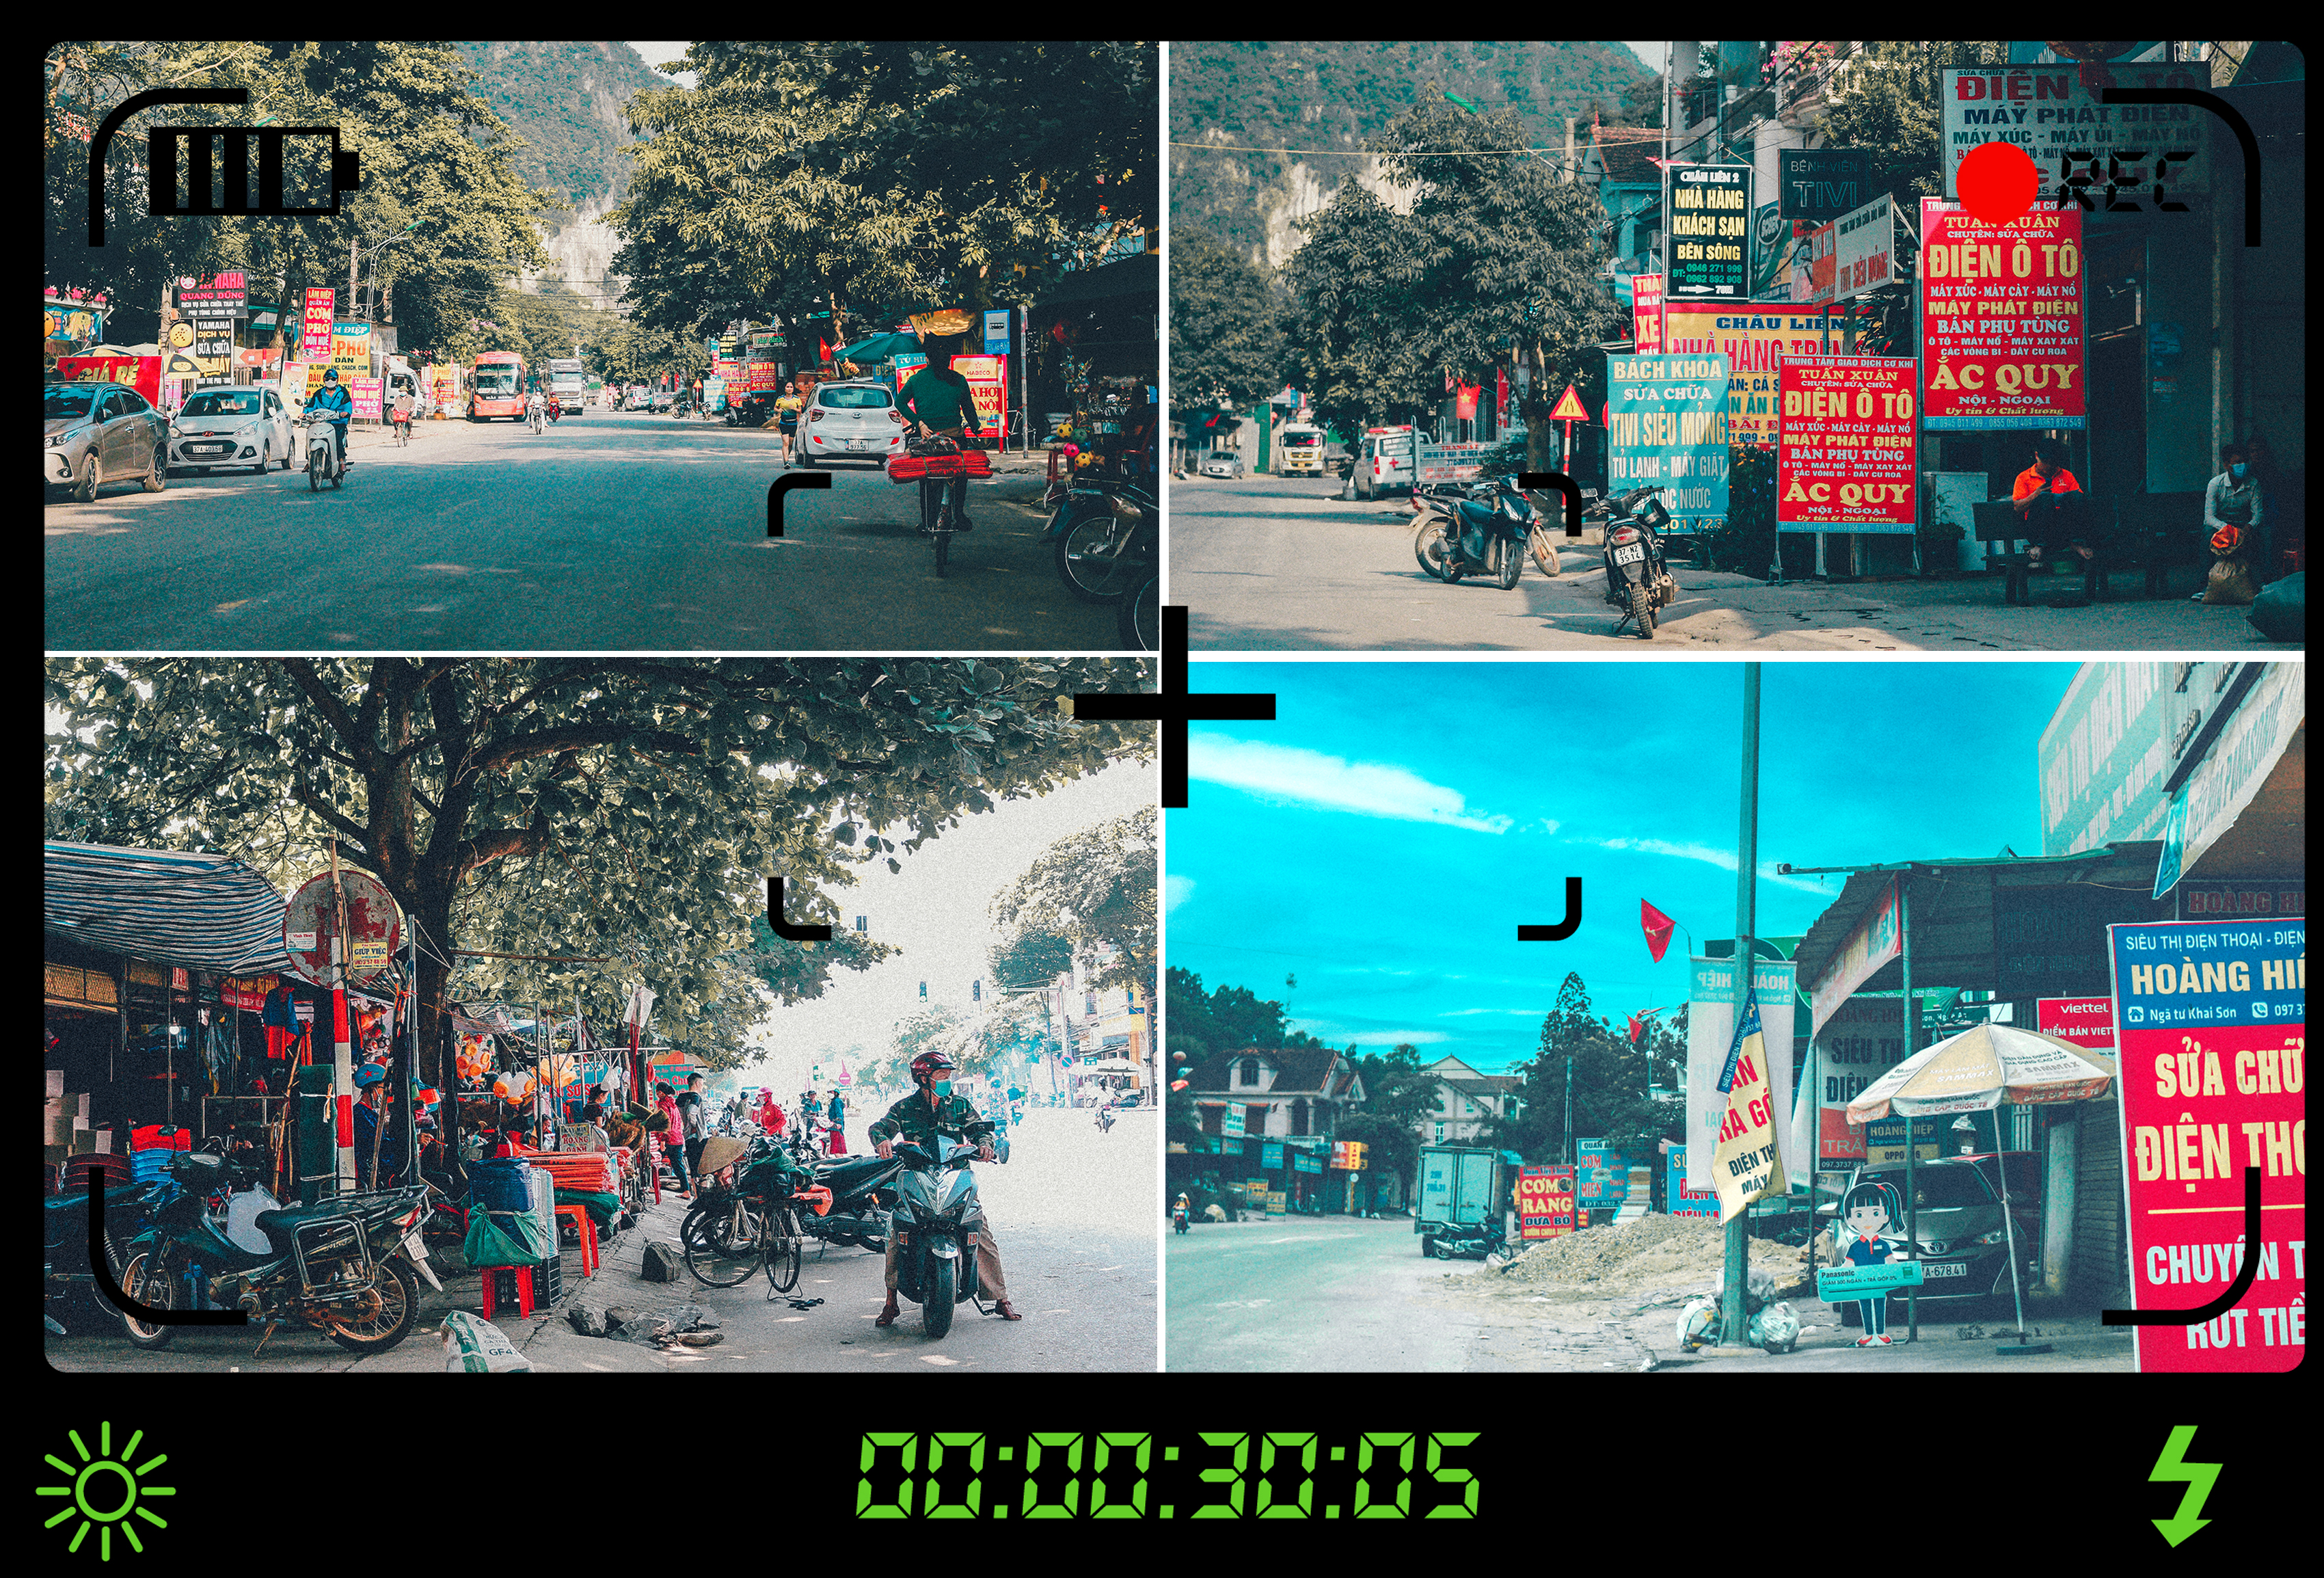 Biển bảng quảng cáo, hàng quán lấn chiếm 2 bên đường ở thị trấn và khu vực chợ Con Cuông; Hình ảnh ở ngã tư xã Khai Sơn (Anh Sơn).